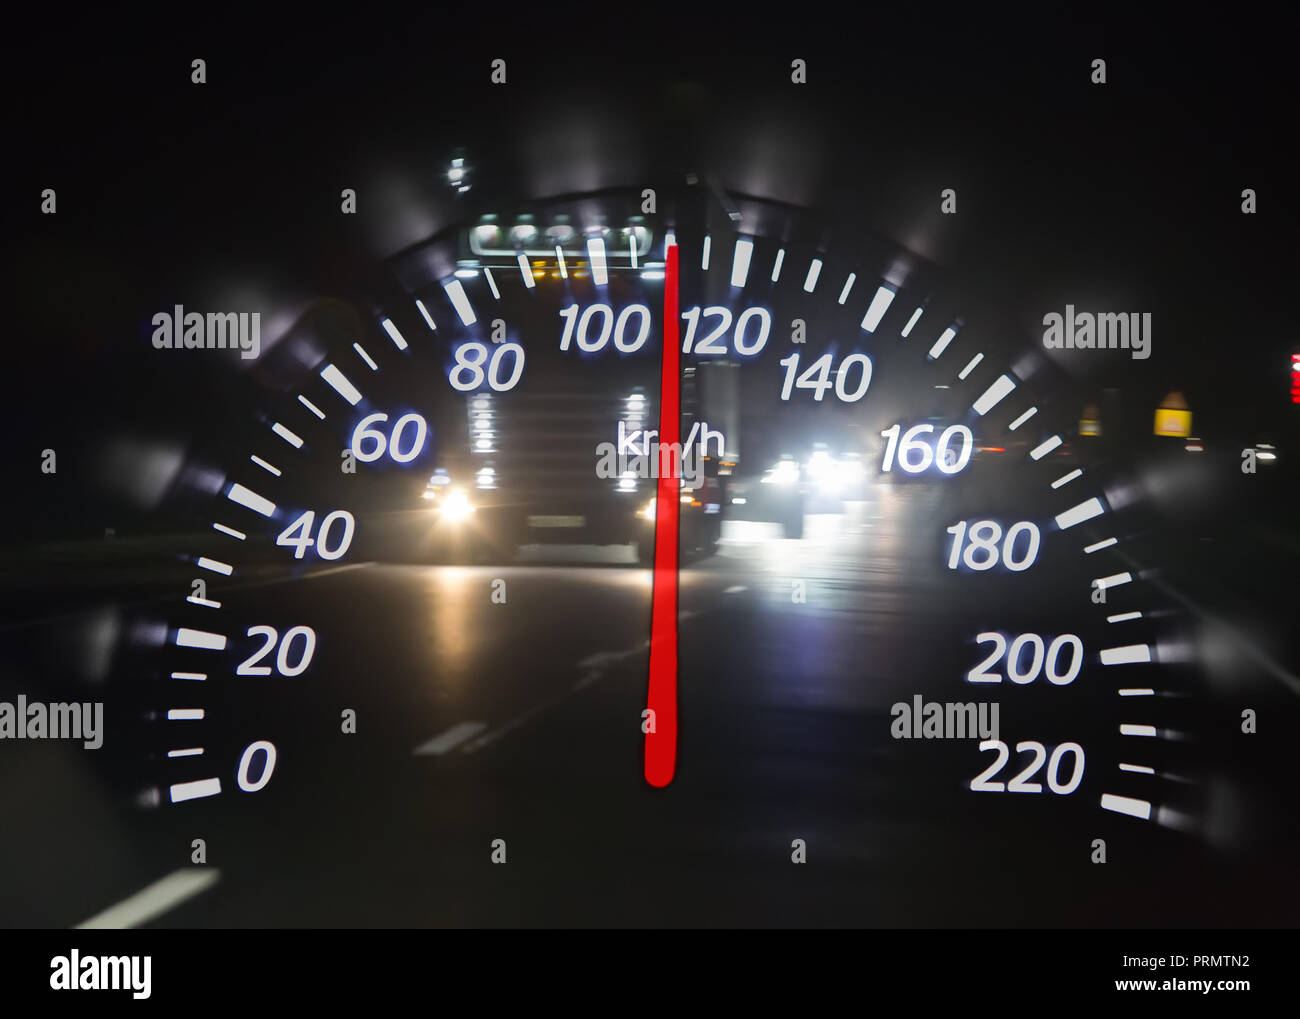 Скорость автомобиля 100км ч. Спидометр 110 км ч. Спидометр БМВ скорость 200. 110 Км/ч БМВ спидометр. Спидометра Mercedes ml 200 км/ч.